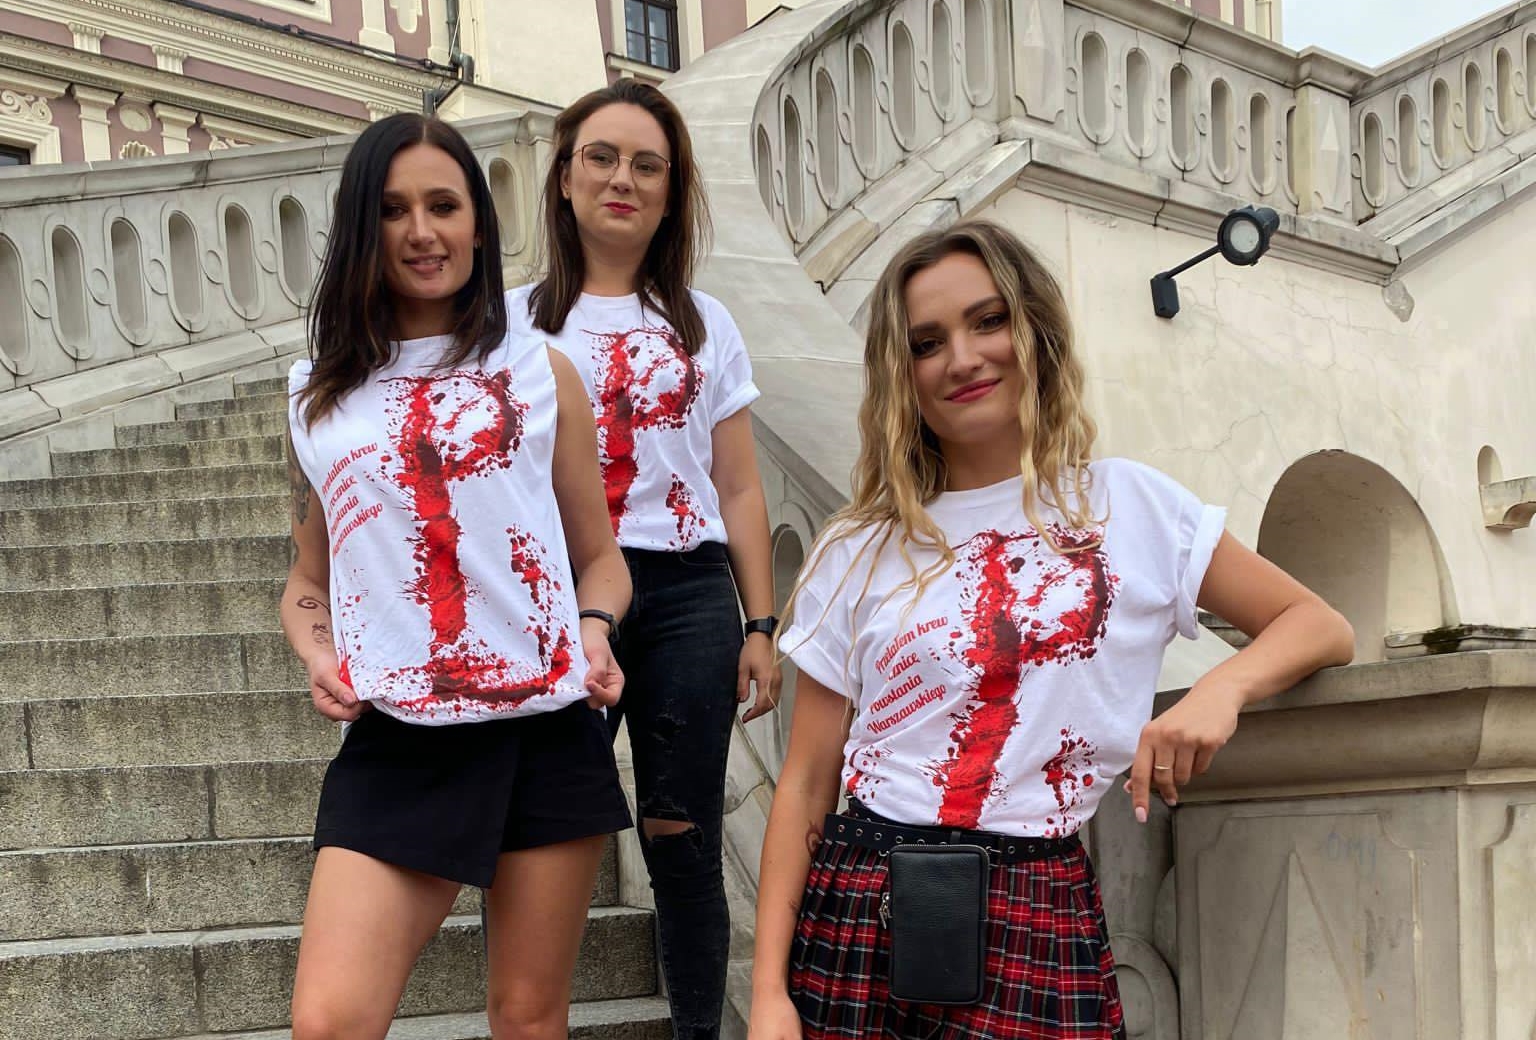 Dziewczyny z Energy Girls wsparły Powstanie Warszawskie oddając krew! Postawa godna naśladowania!